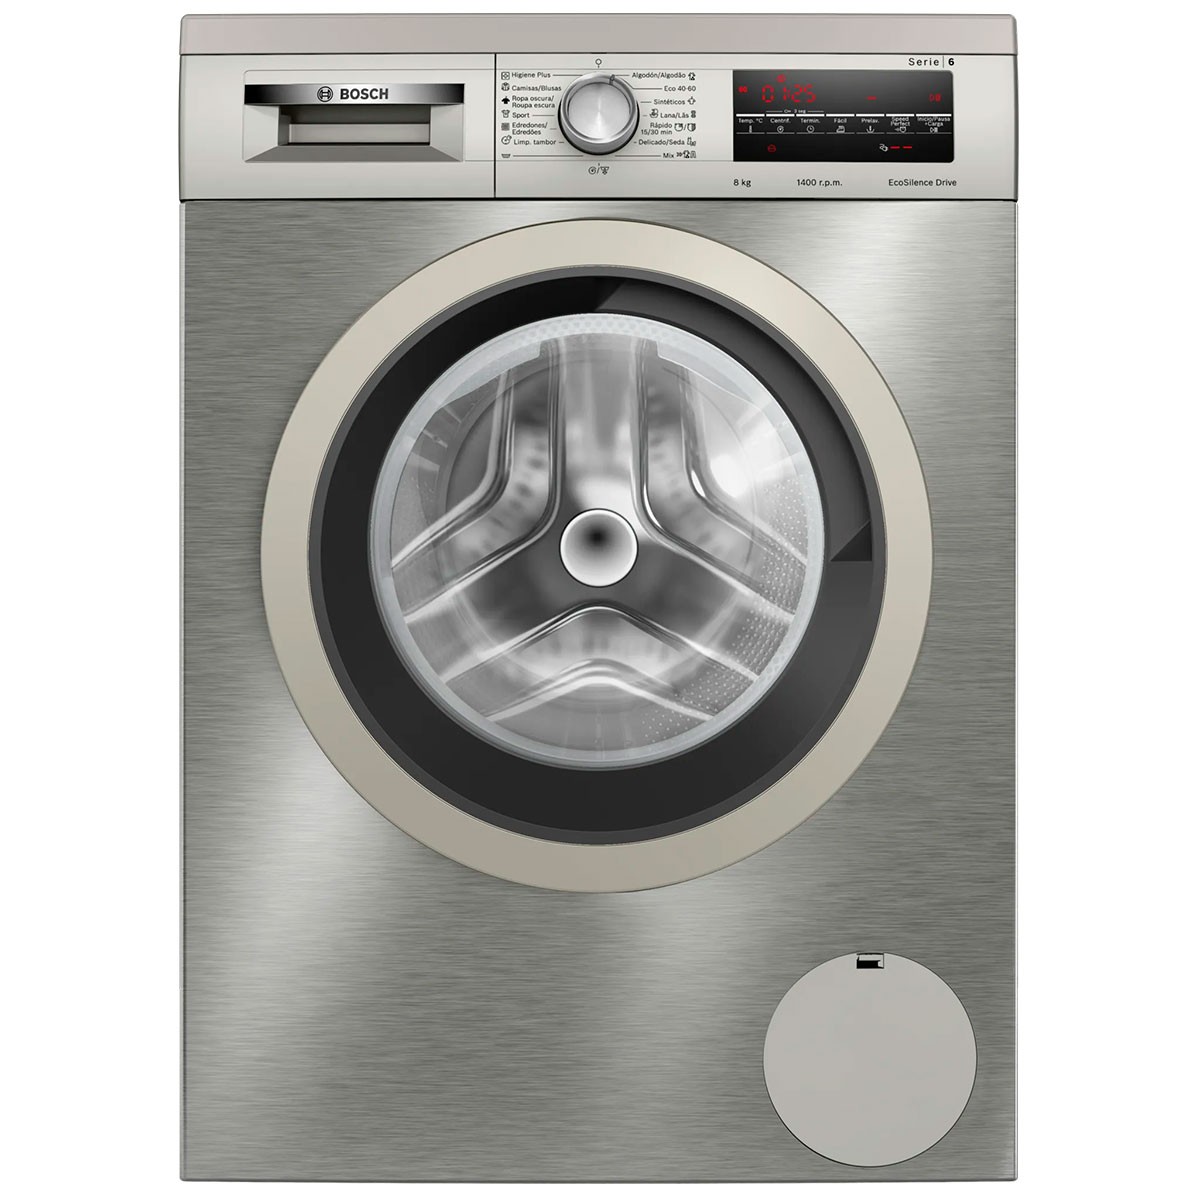 Comprar lavadora integrable Bosch Serie 6